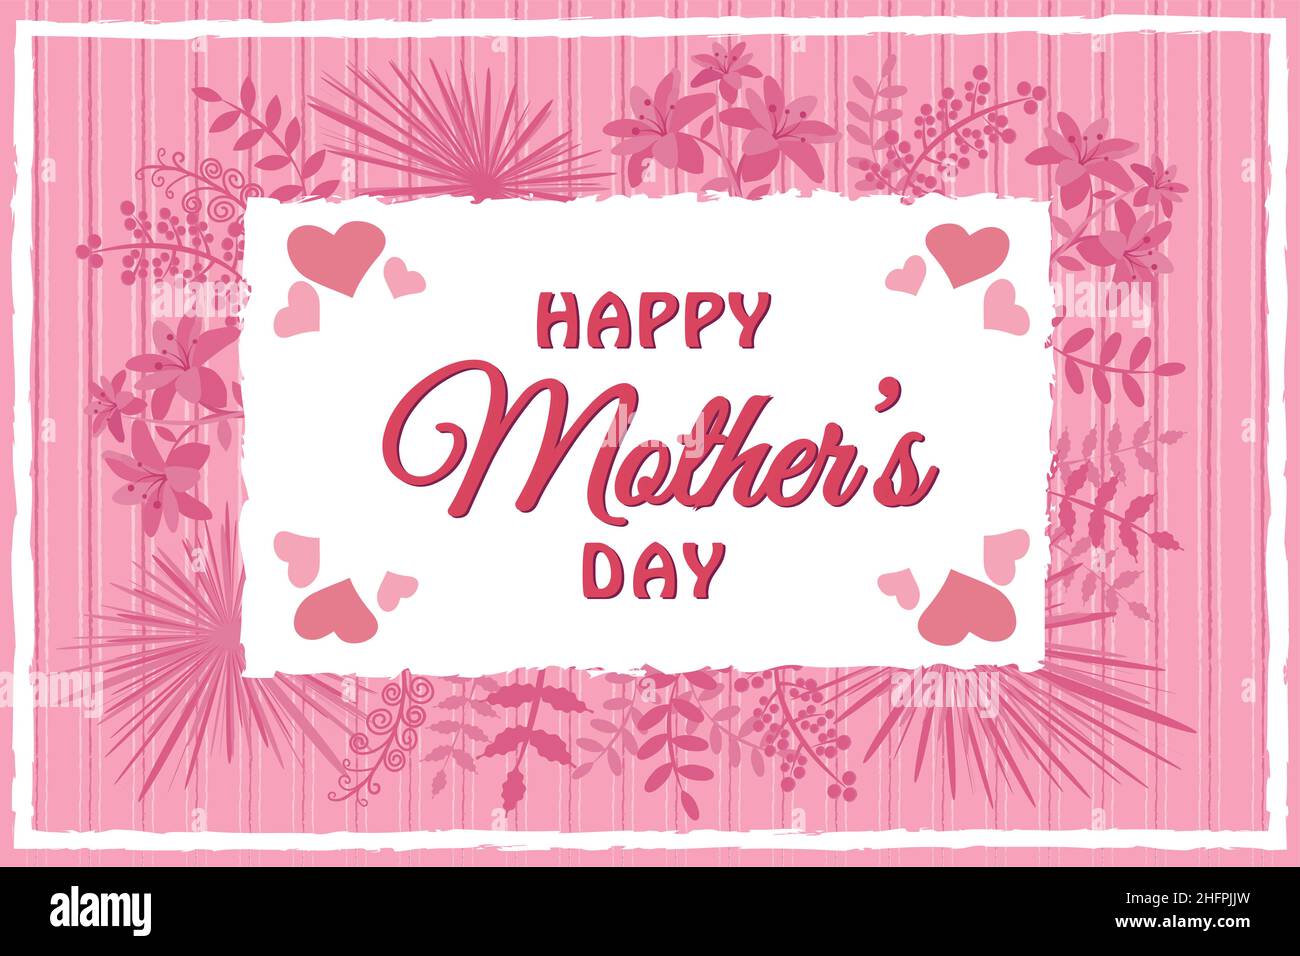 Glückwunschkarten-Flyer-Banner mit Blumenhandschrift zum Muttertag Stock Vektor